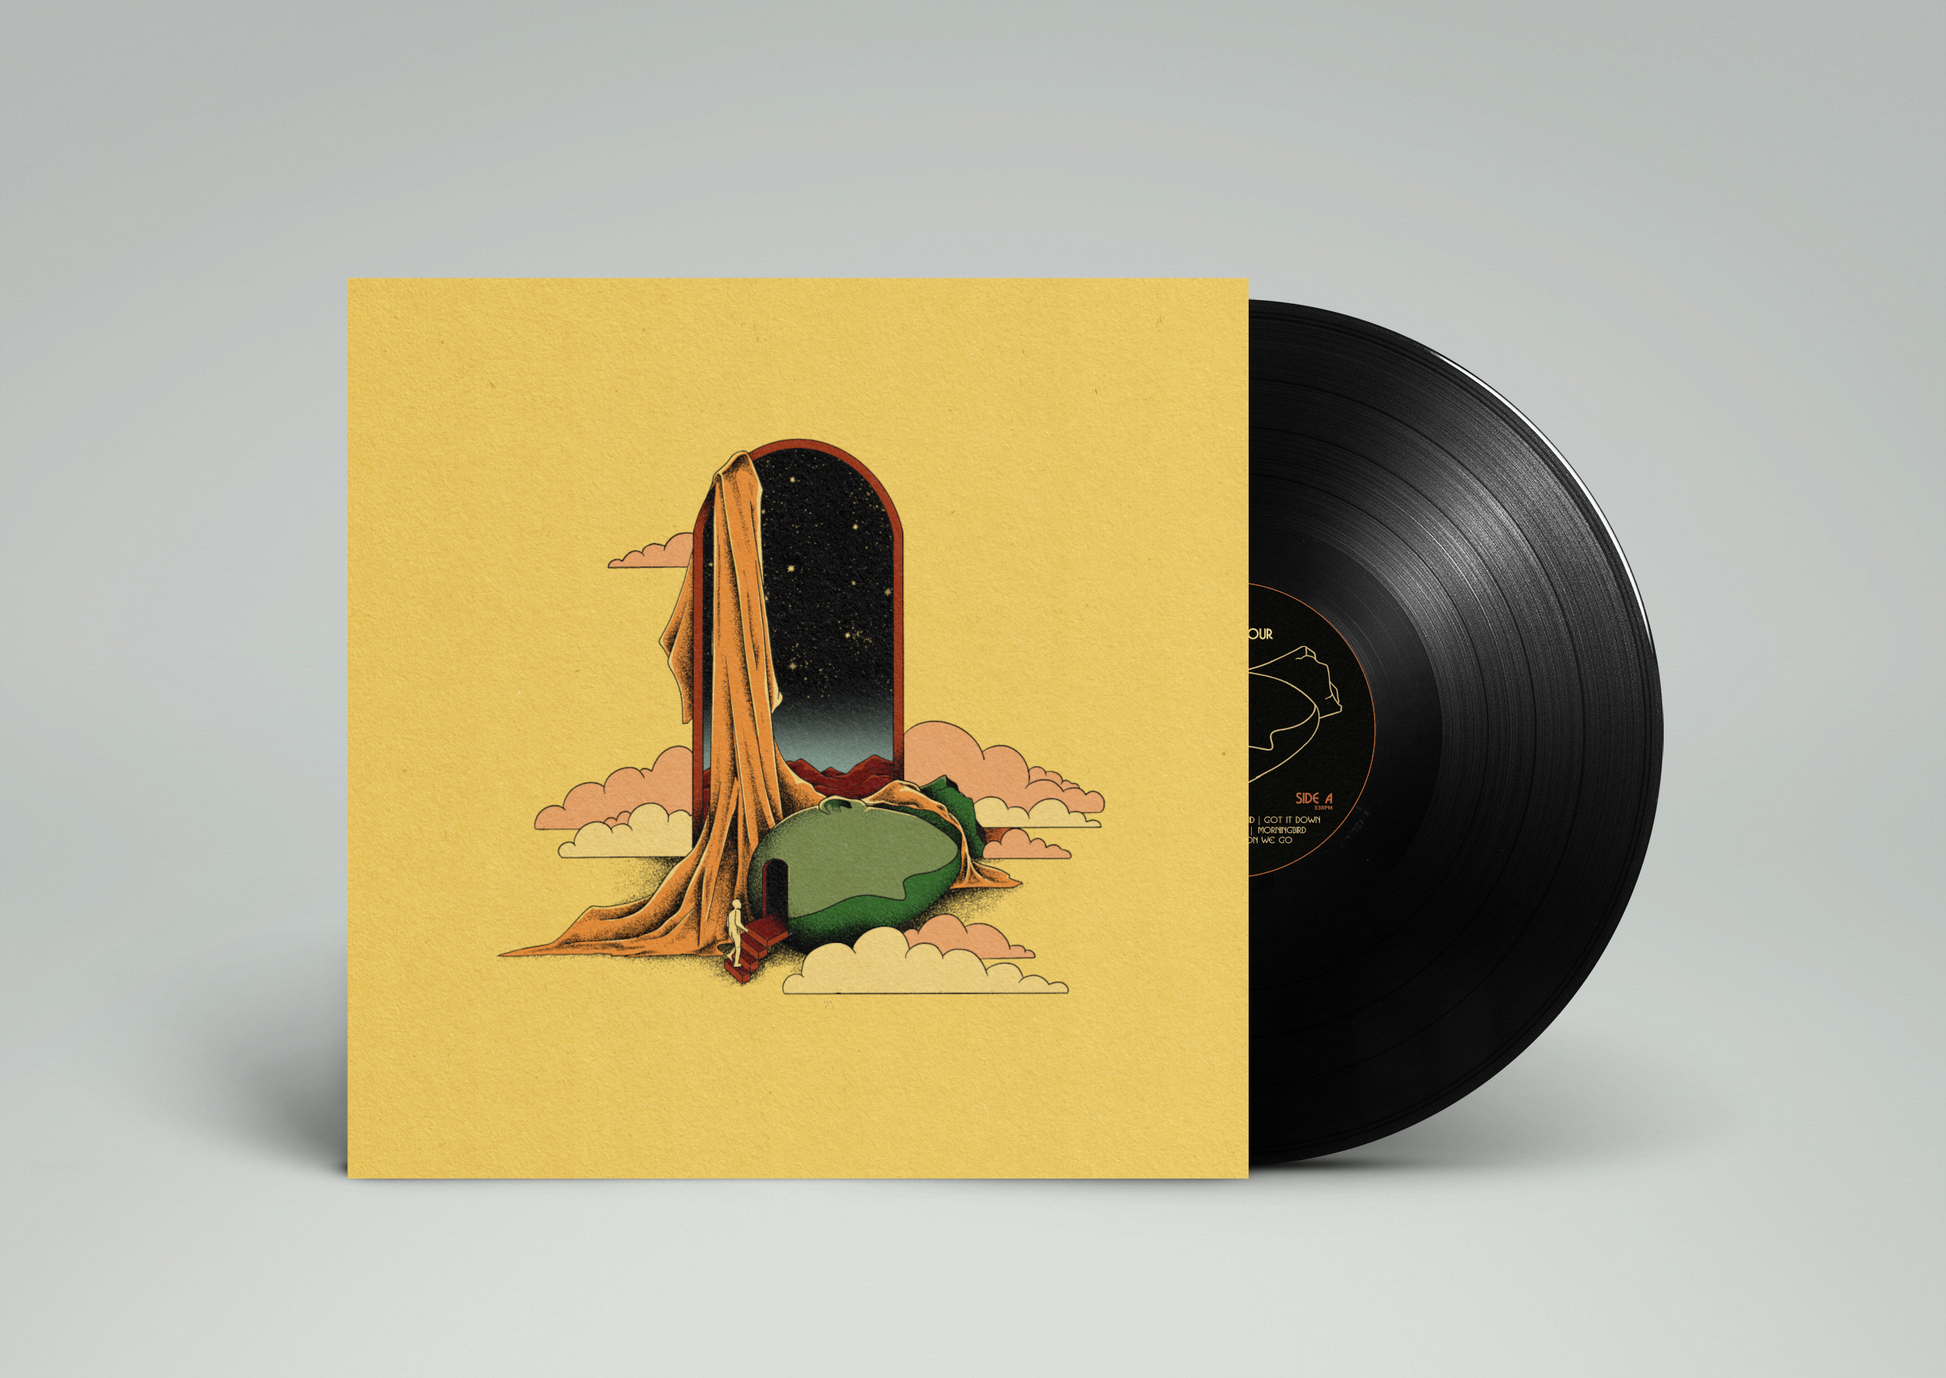 Golden - 12" Vinyl (Limited Edition 1/100) – Ten Minute Detour